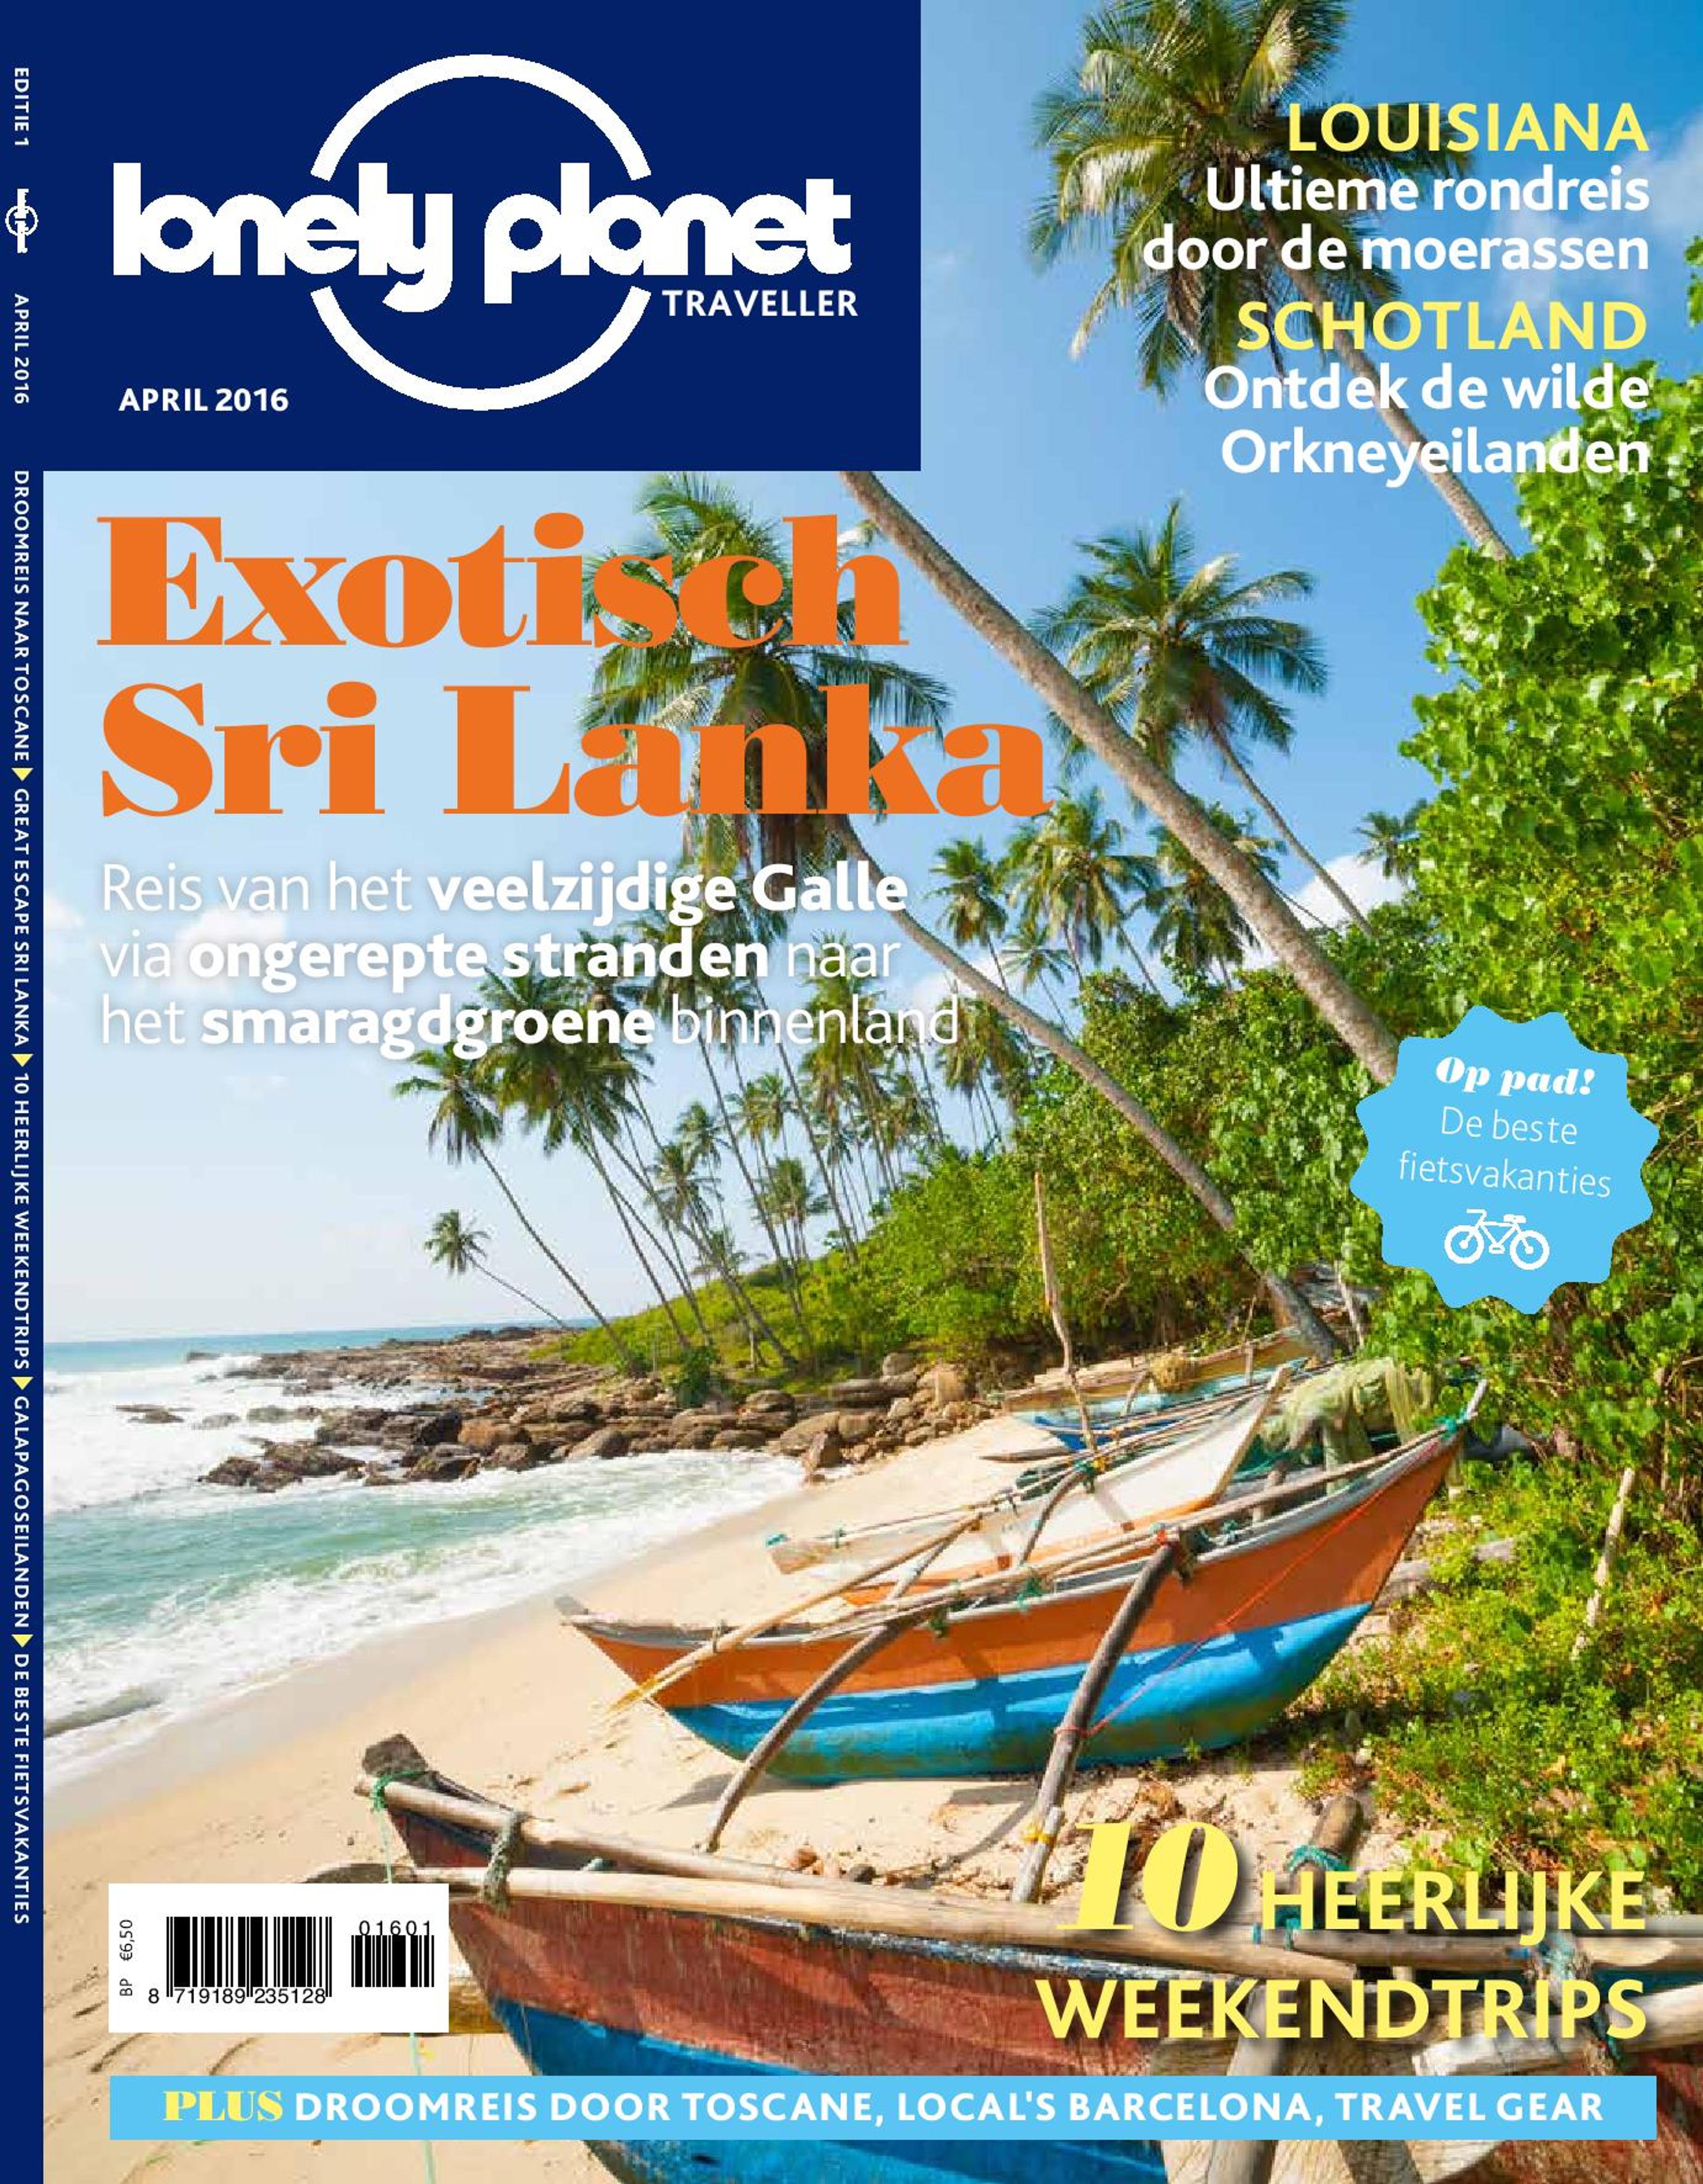 Lonely Planet Traveller wordt maandblad